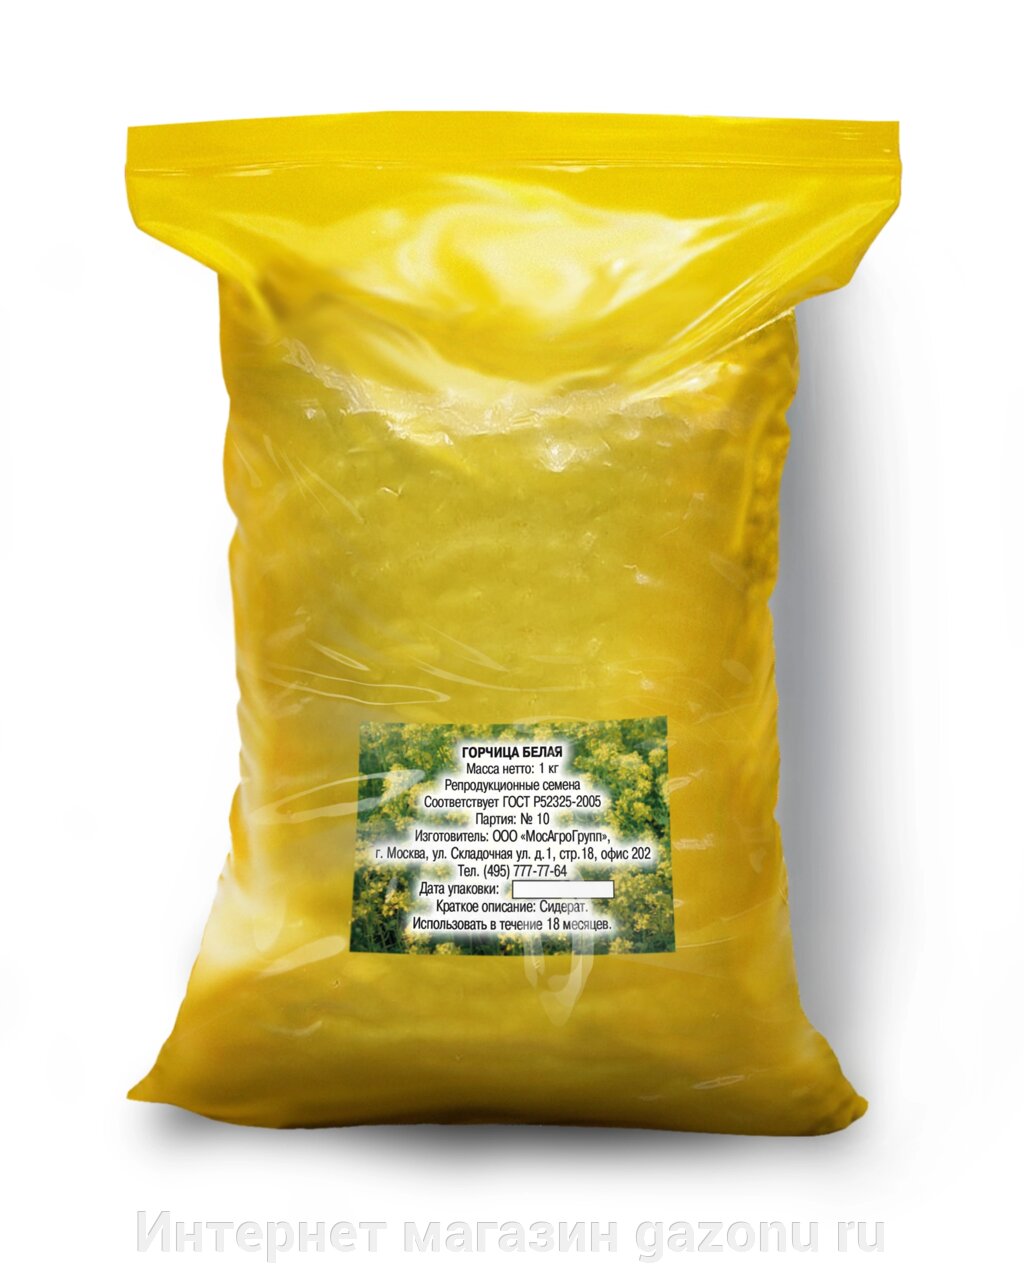 Семена горчицы белой - 1 кг от компании Интернет магазин gazonu ru - фото 1